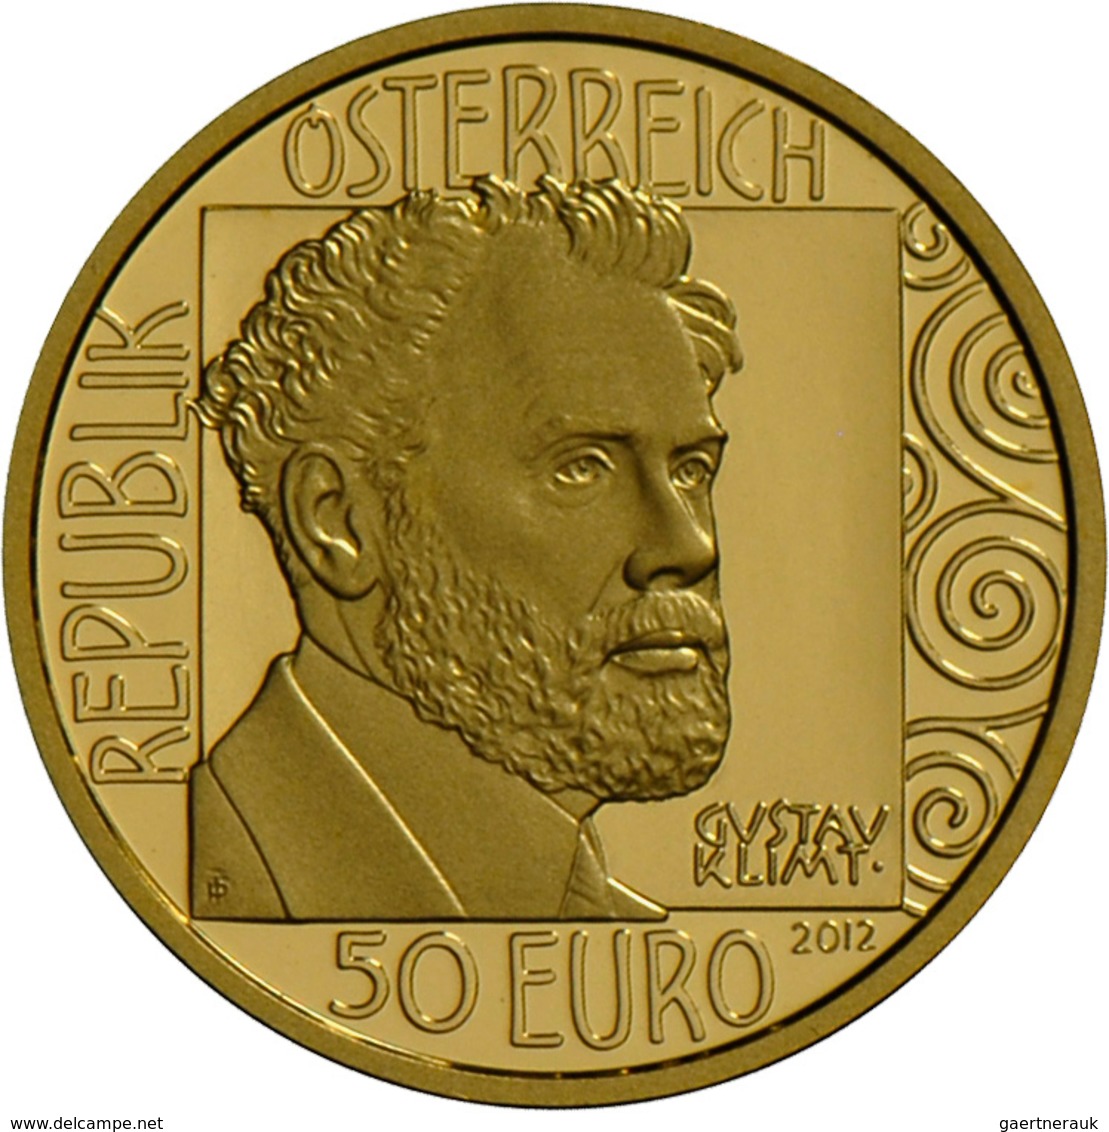 Österreich - Anlagegold: Lot 4 Goldmünzen: 50 Euro 2012 Adele Bloch-Bauer I. (2x) 10,14 g, 986/1000